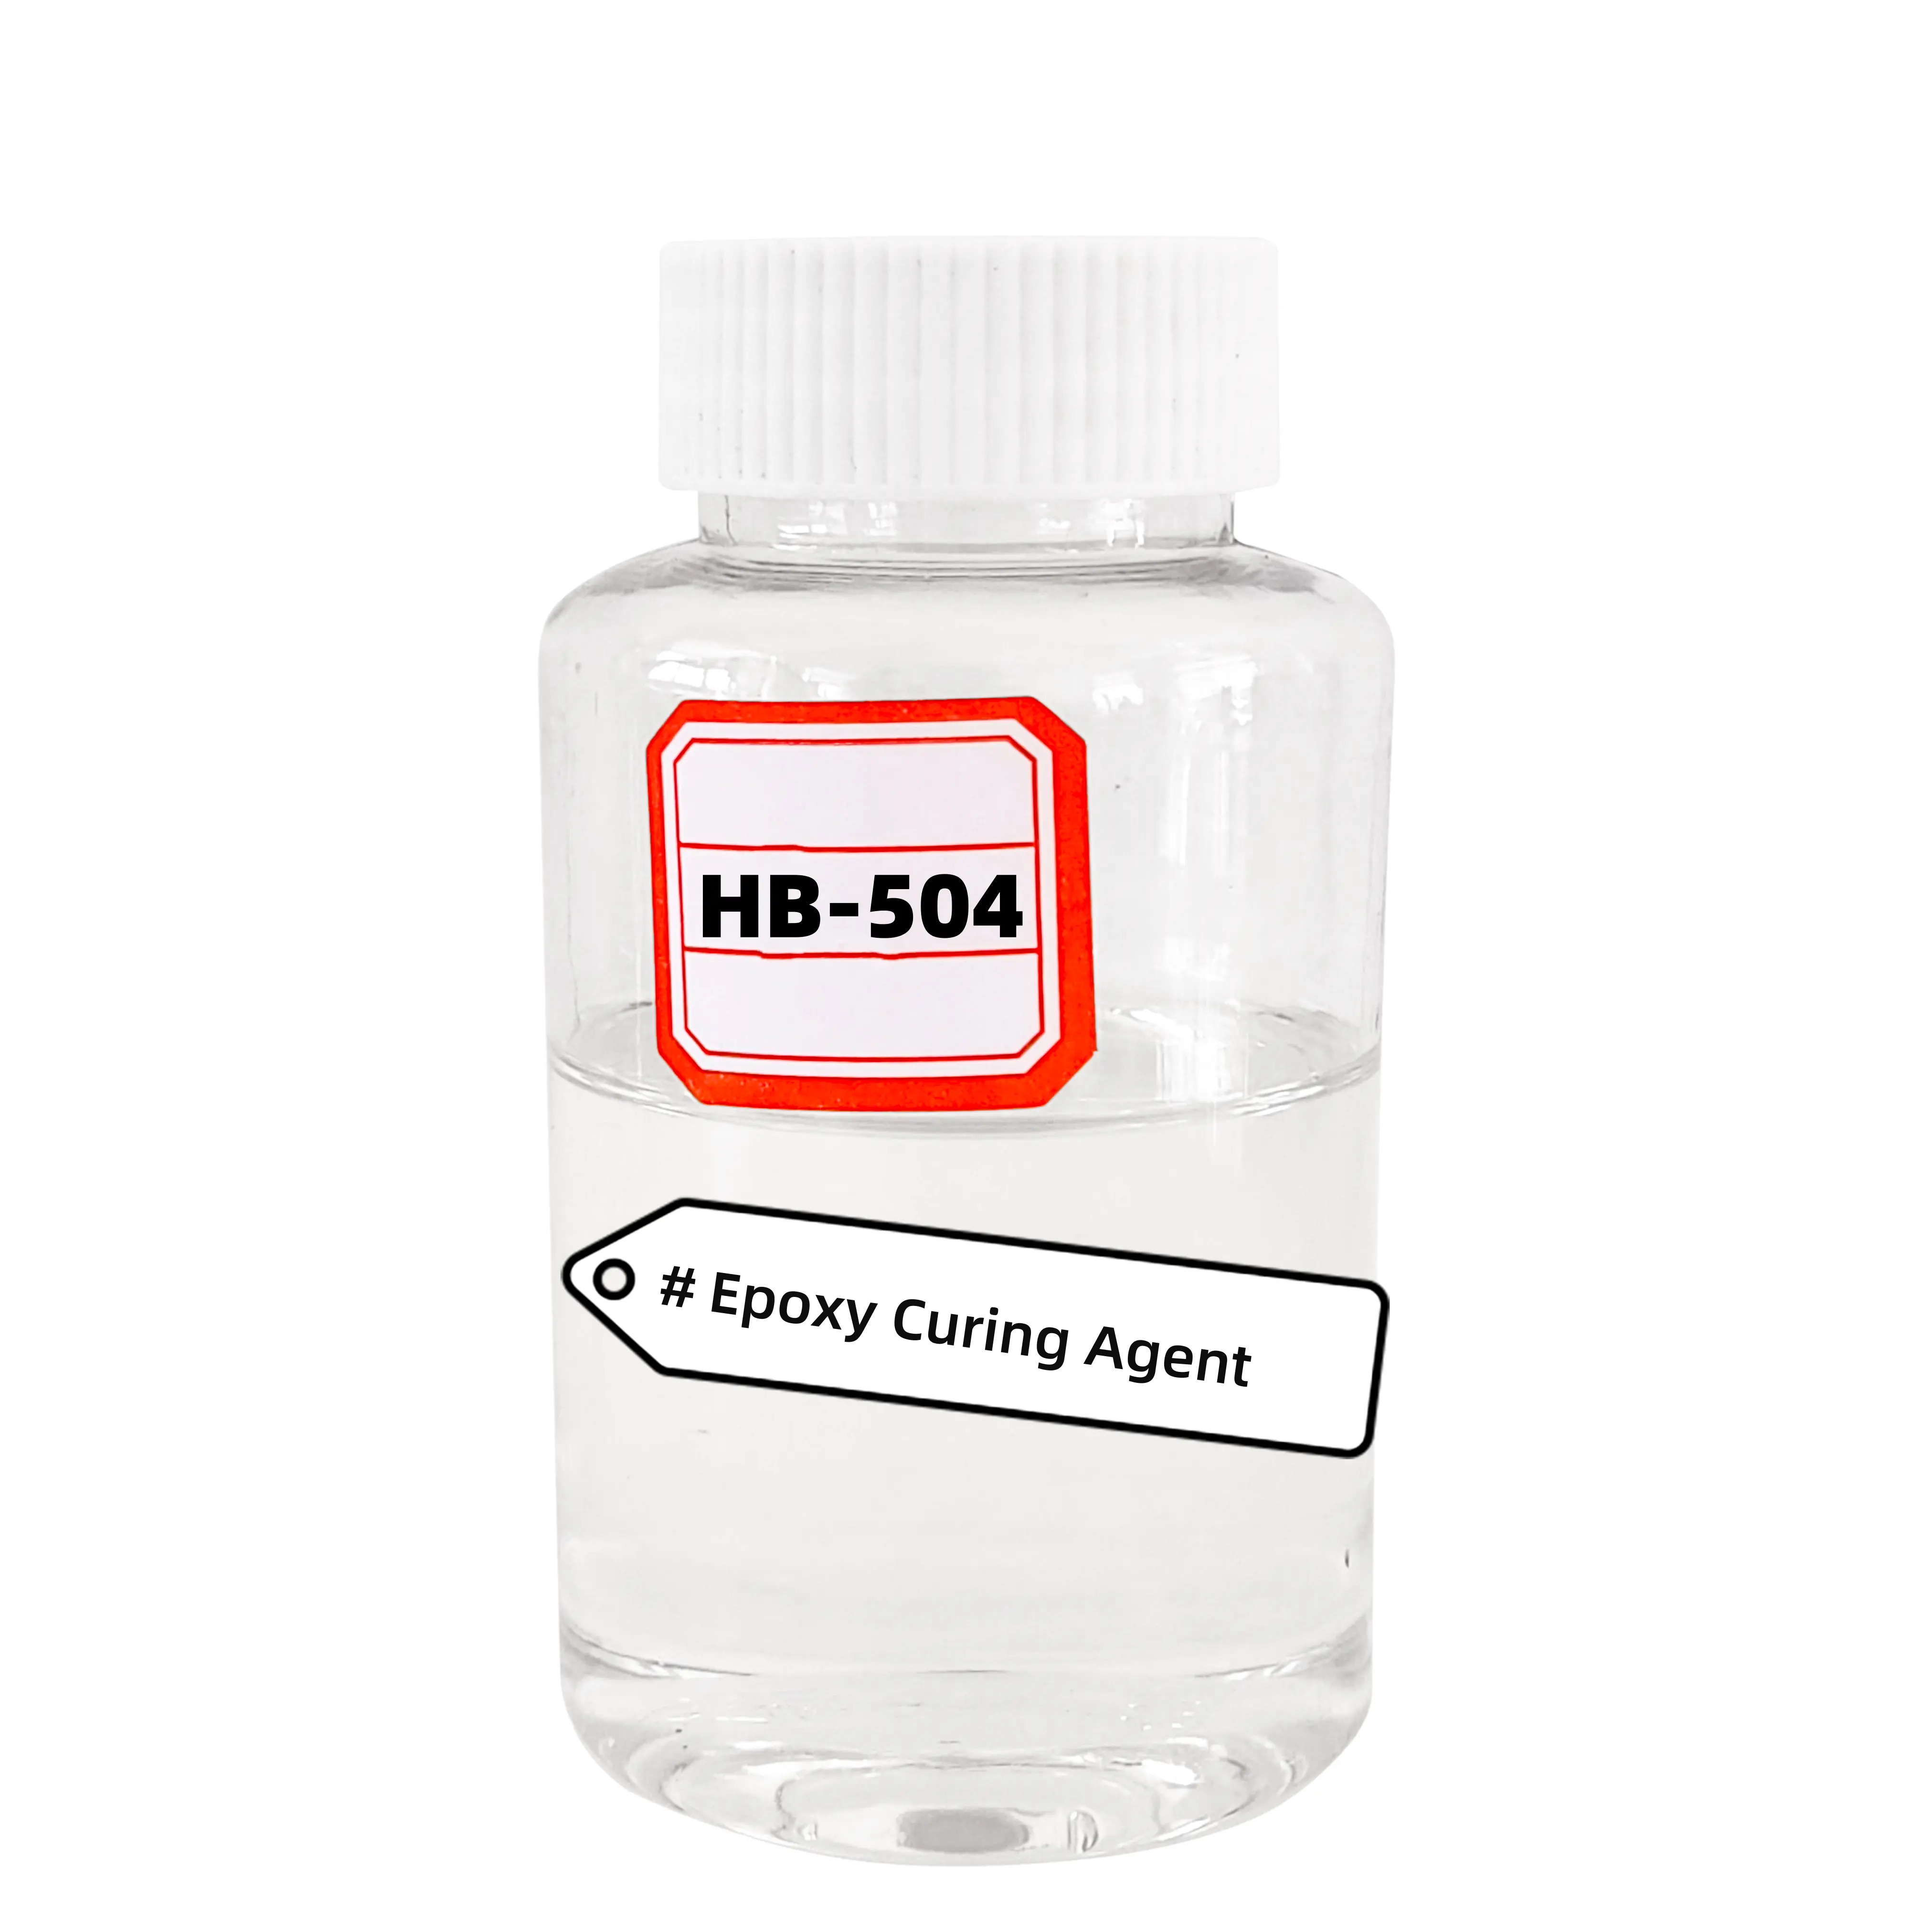 Endurecedor Epoxy líquido transparente para adesivo de ligação HB-504 de boa performance e longa vida útil